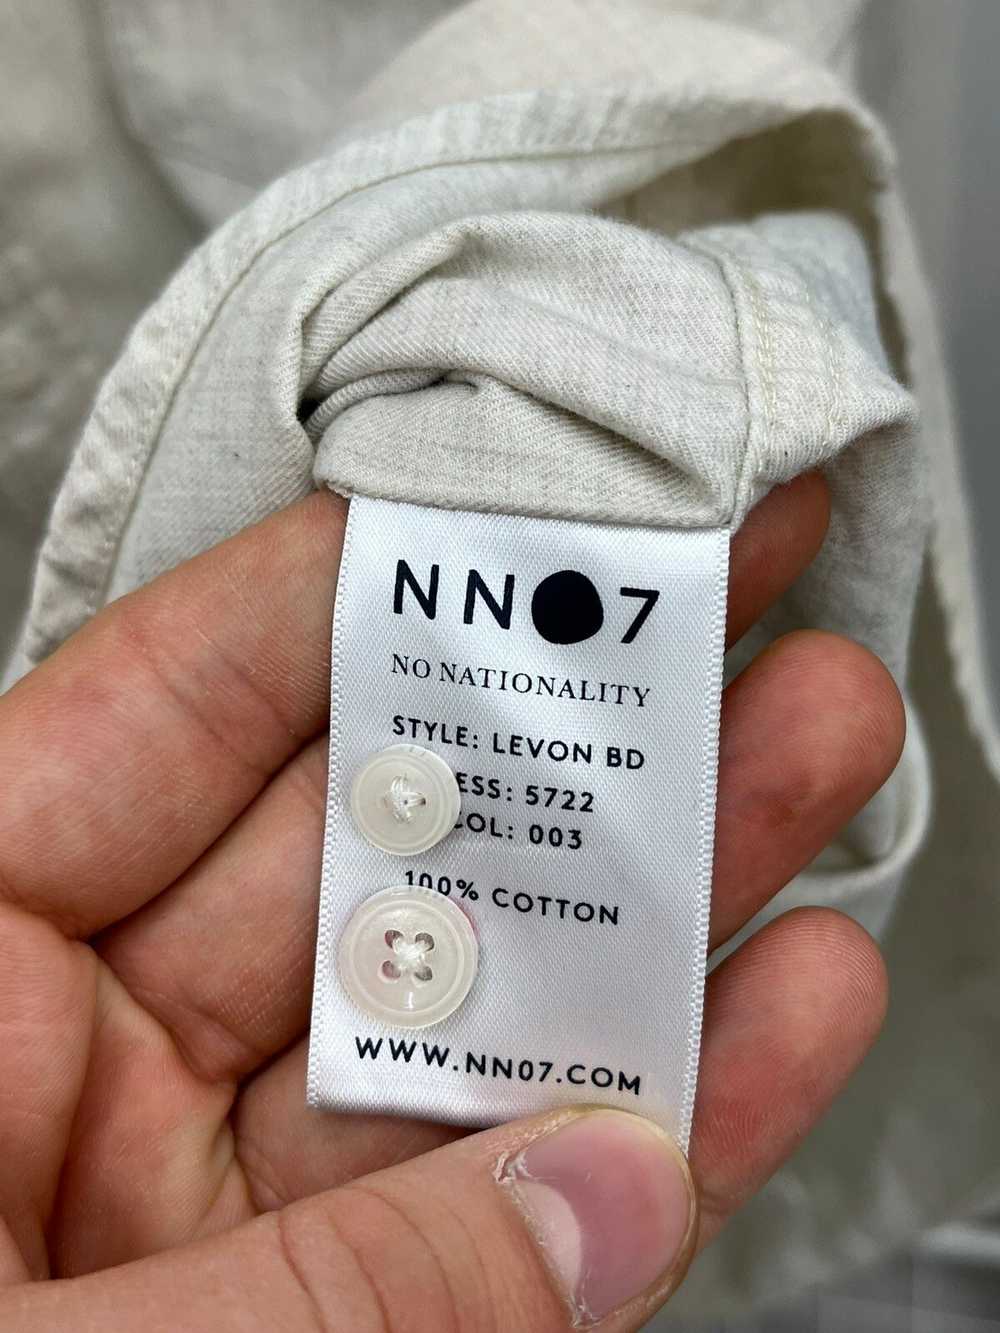 Nn07 NN07 Levon Bd Cotton Button Up Shirt - image 4